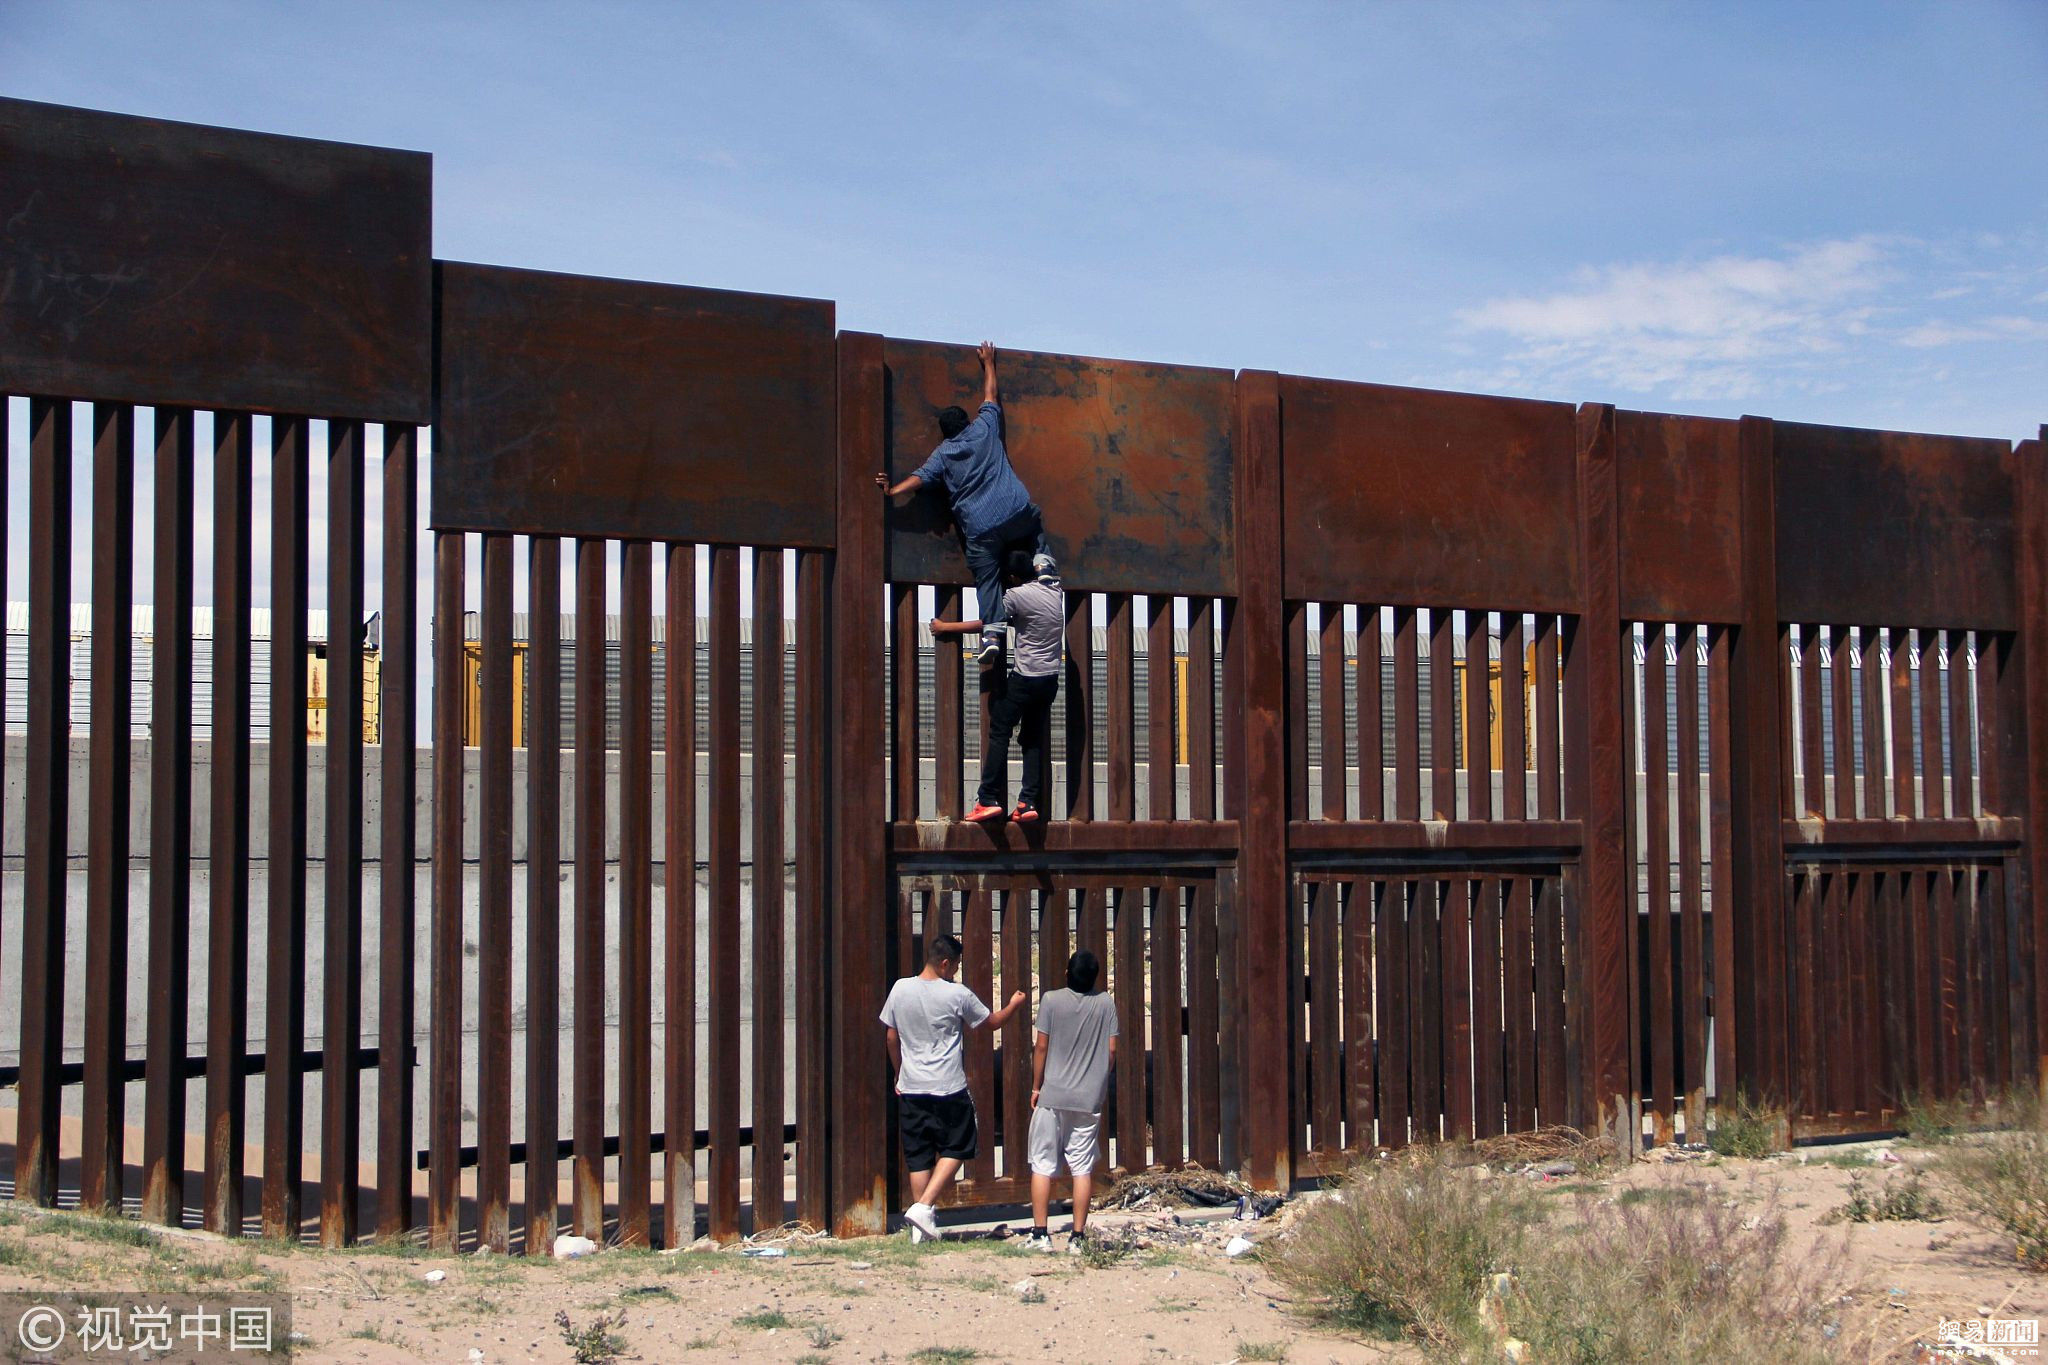 墨西哥男子挑战特朗普边境墙 叠罗汉翻墙进美